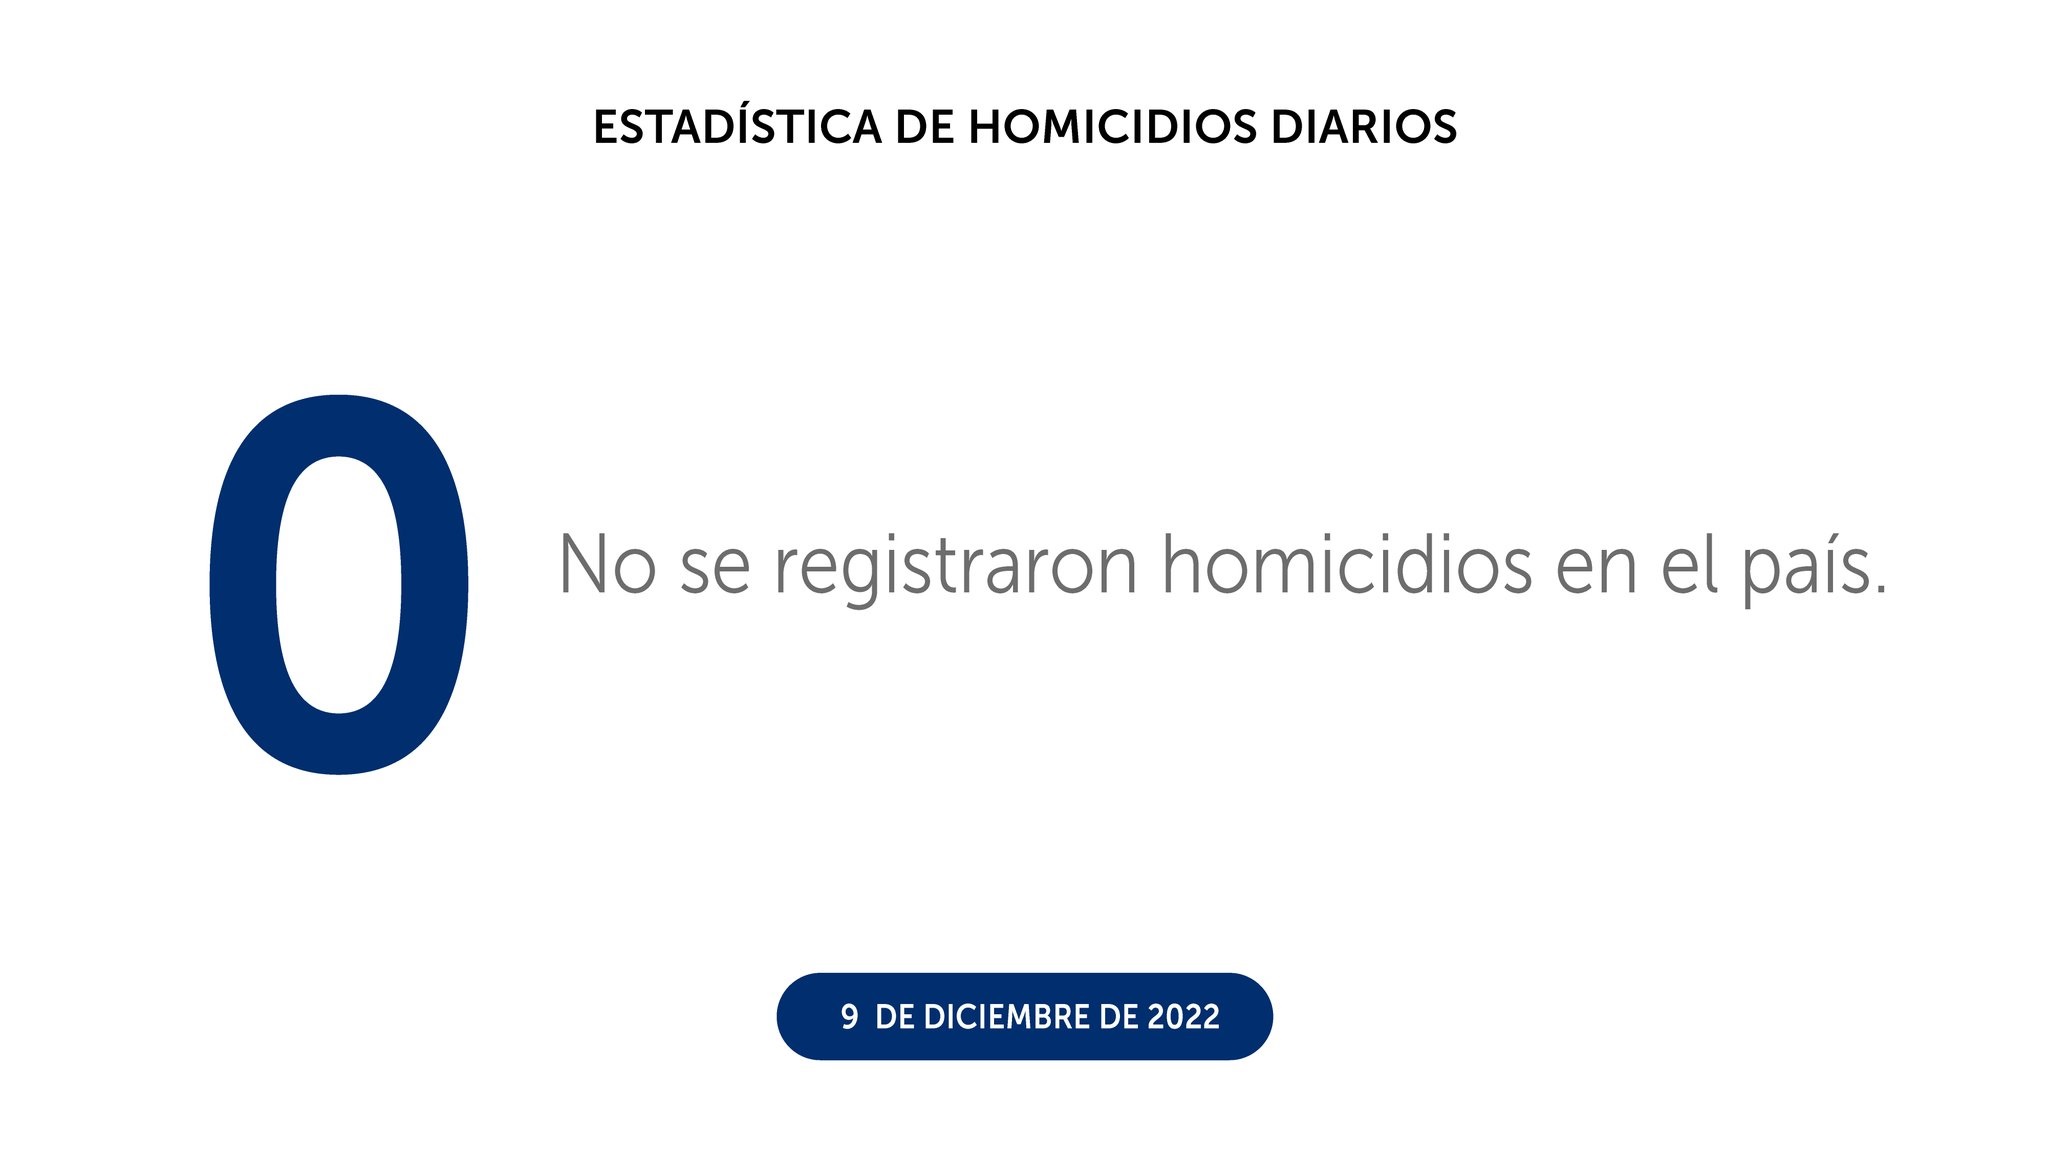 Nueve de los diez días de diciembre no registran homicidios